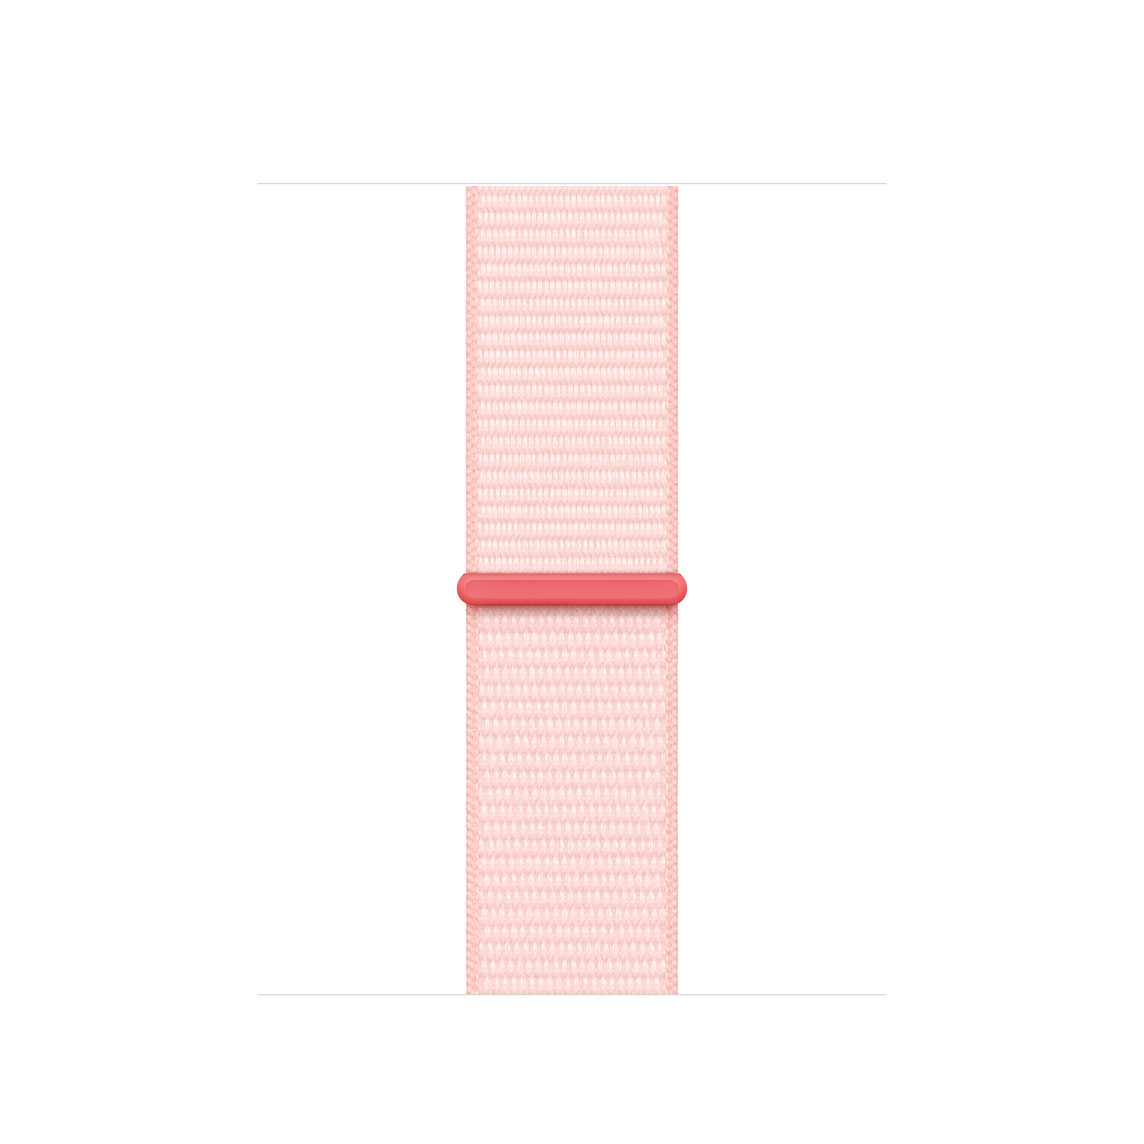 Sport Loop Armband Hellrosa, hellrosanes gewebtes Nylon mit Klettverschluss